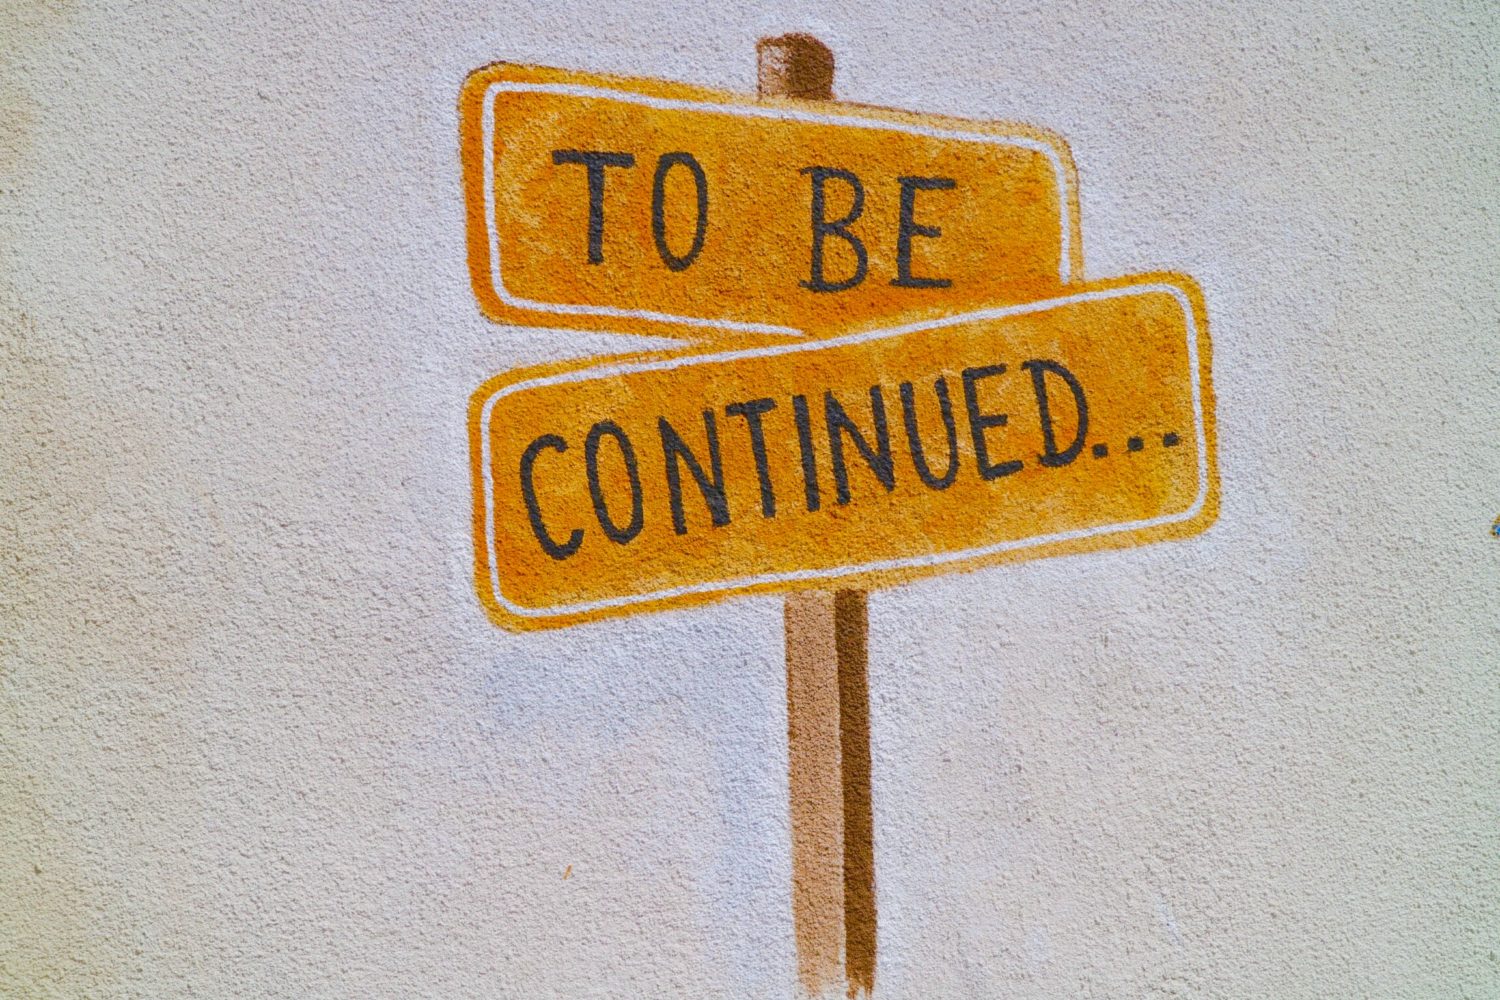 Schilder mit der Aufschrift "To be continued...".